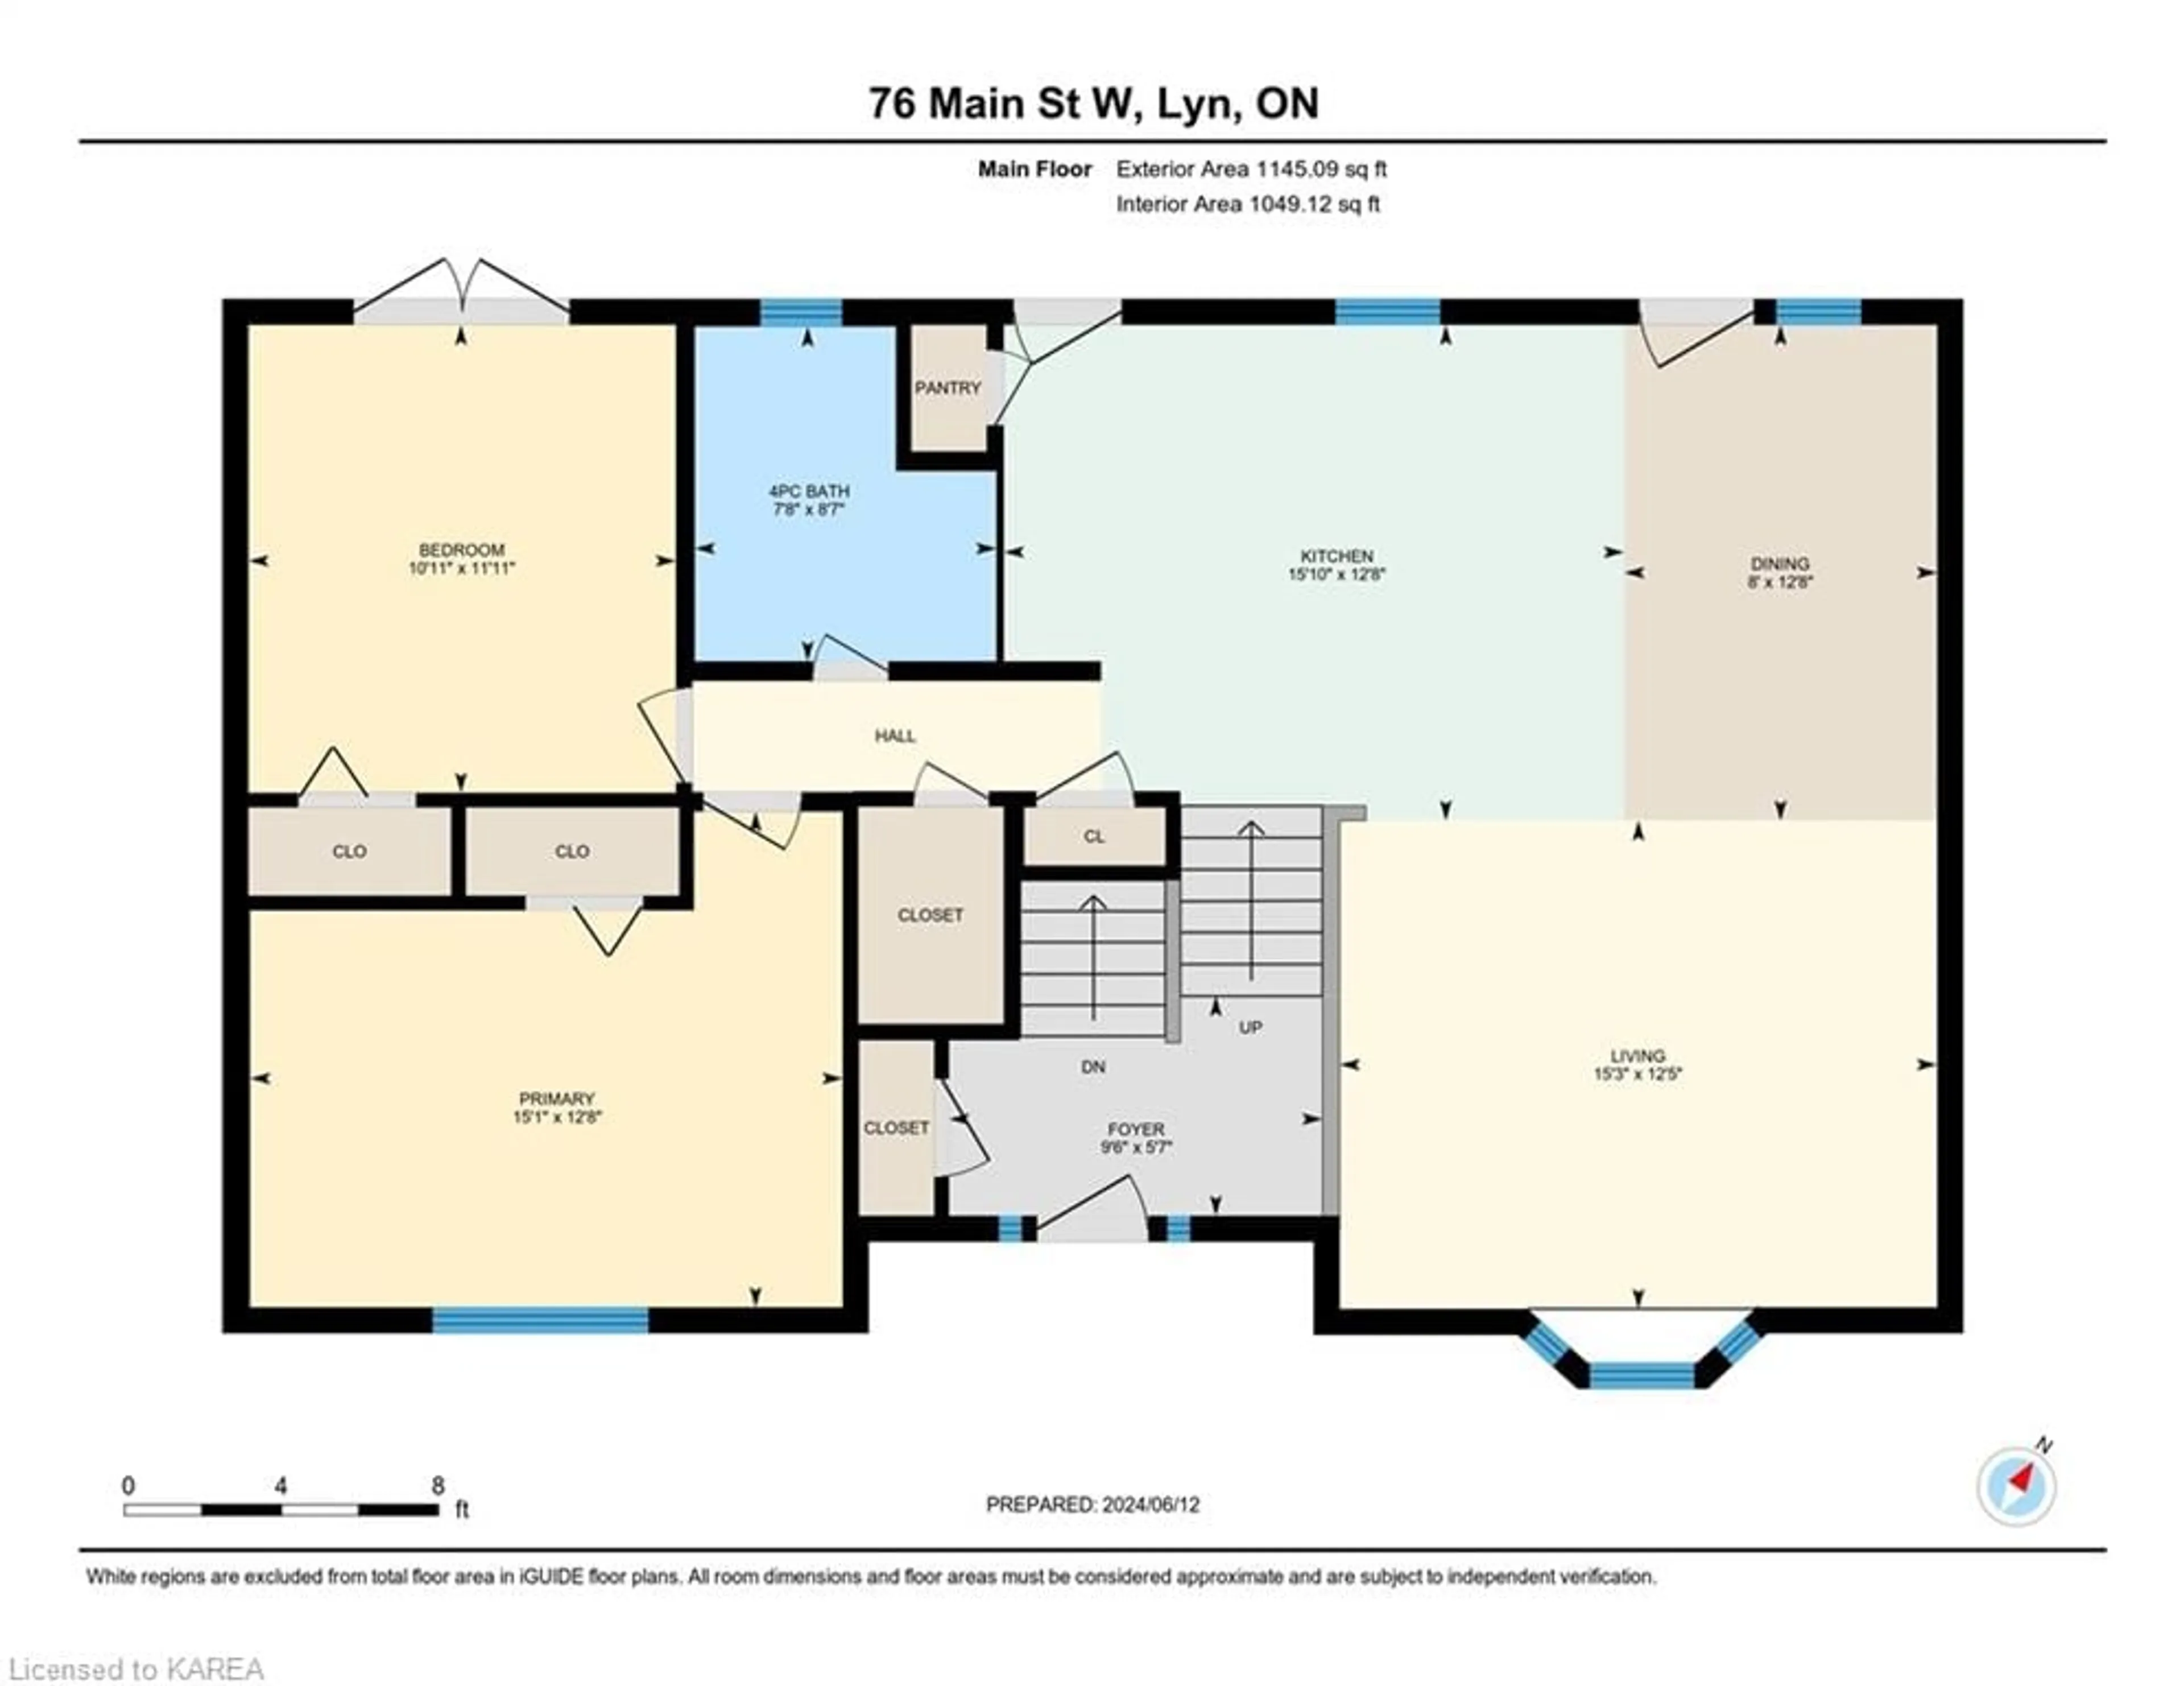 Floor plan for 76 Main St, Lyn Ontario K0E 1M0